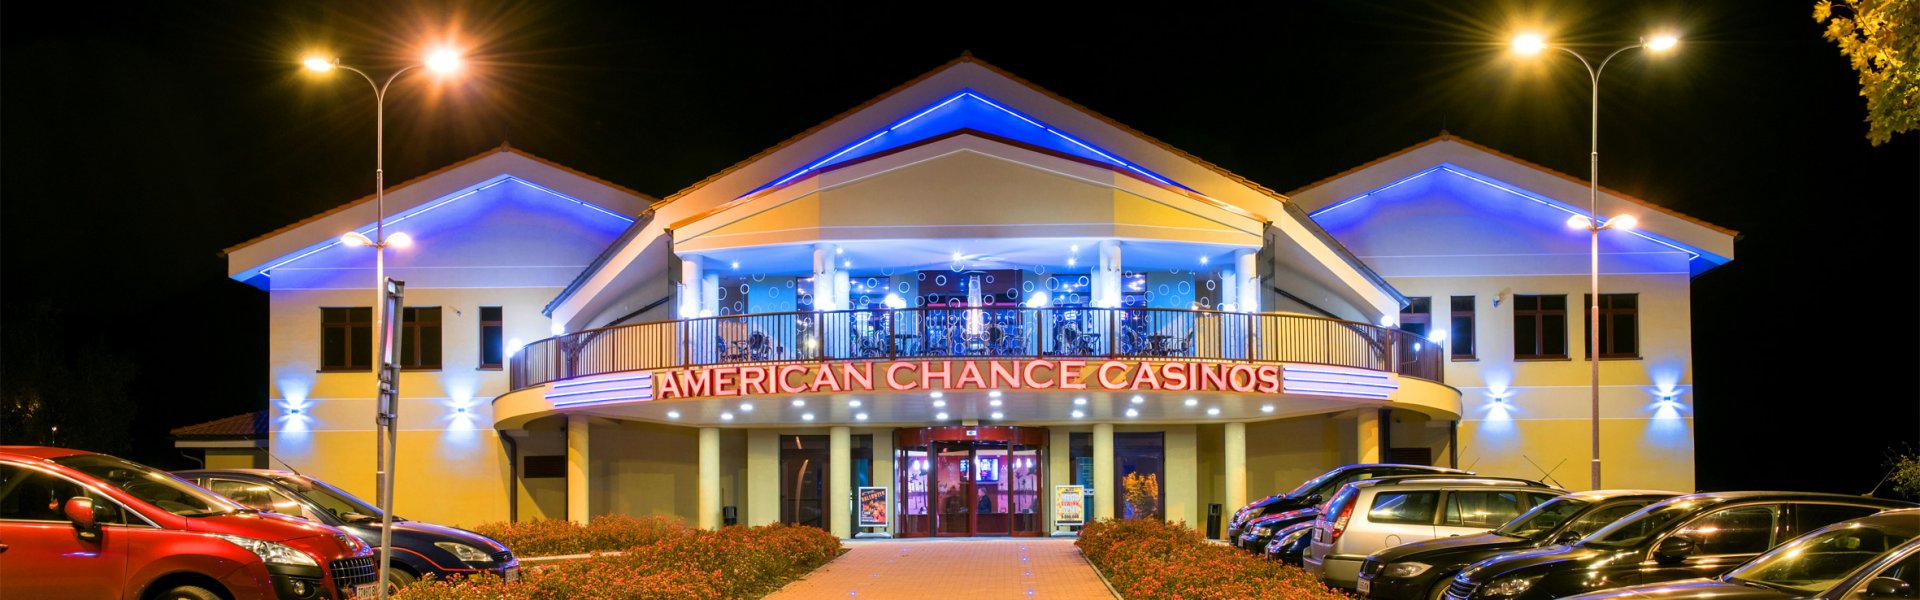 Casino casino utan spelpaus trustly Kungen Näte